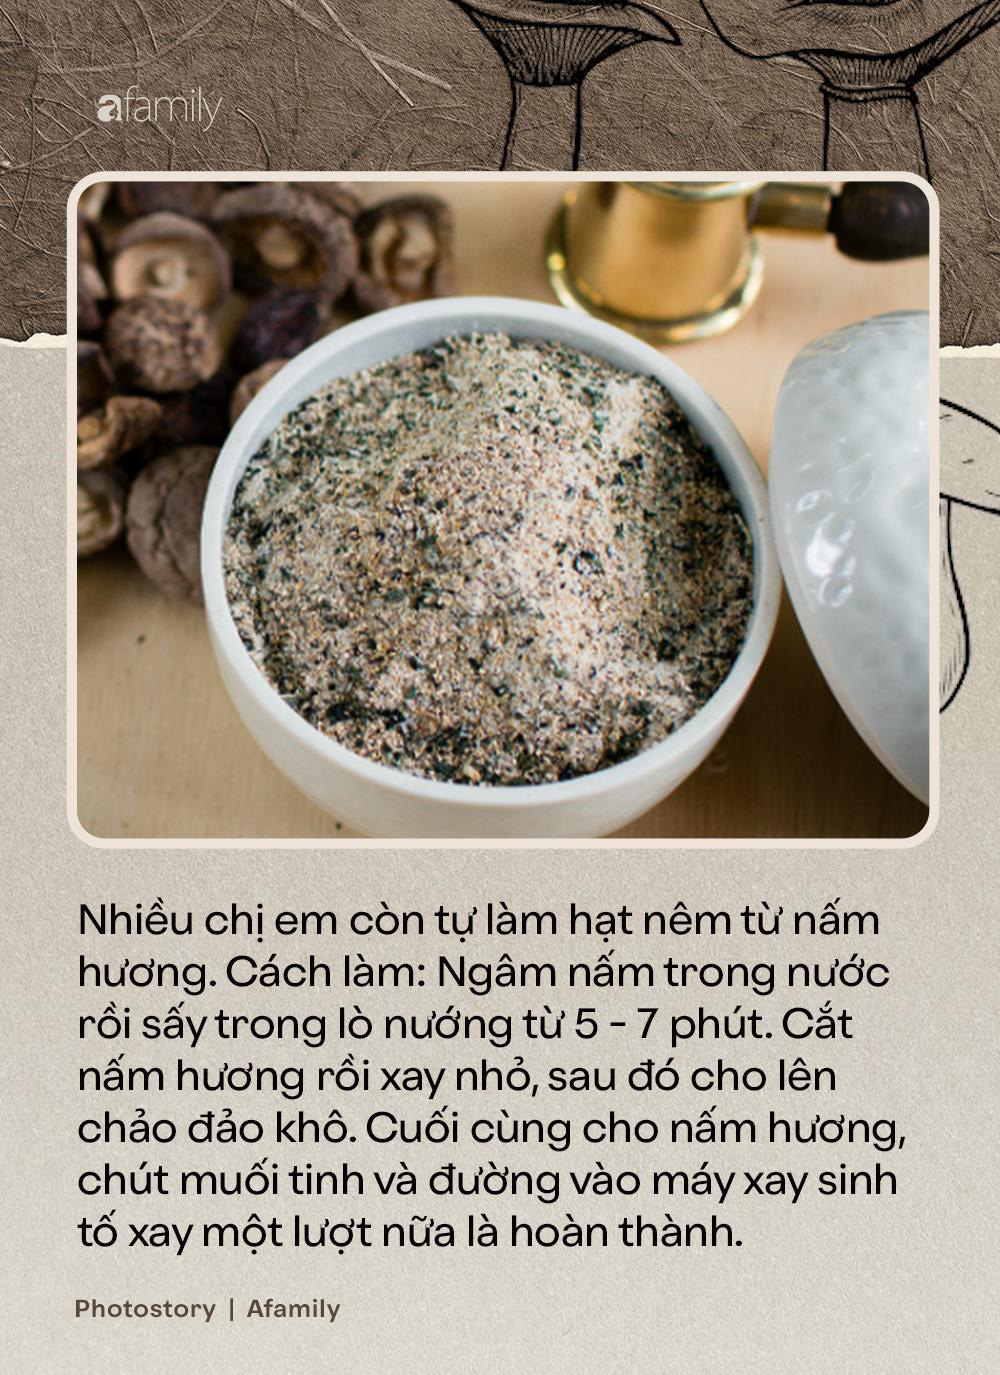 Nấm hương, thứ nguyên liệu thần thánh nhất định không thể thiếu trong ẩm thực món chay - Ảnh 6.